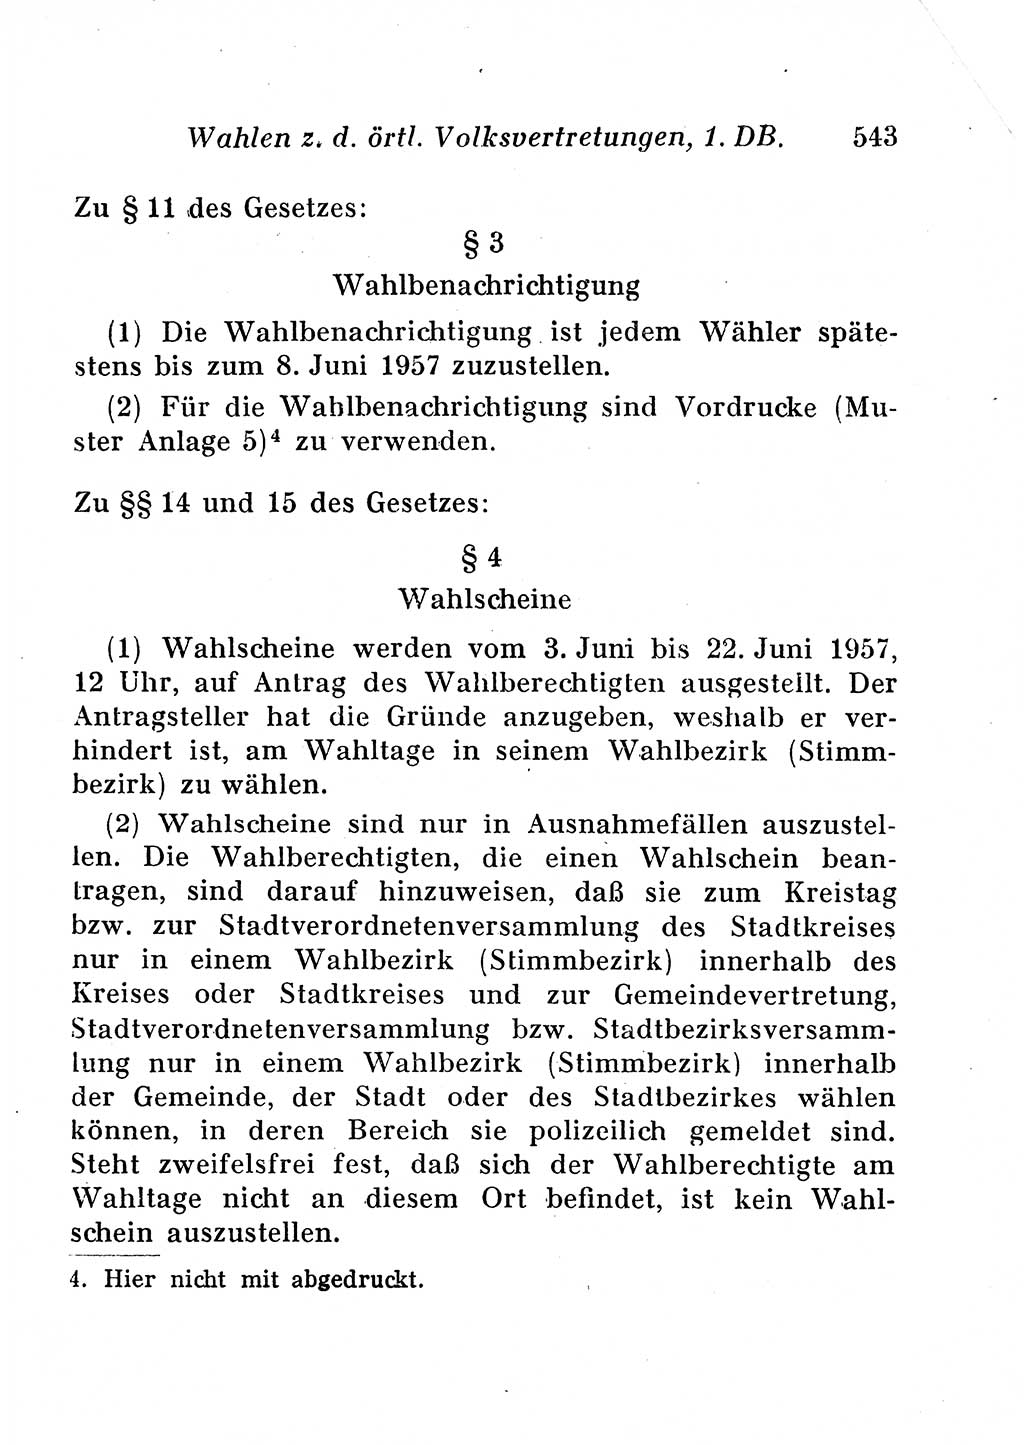 Staats- und verwaltungsrechtliche Gesetze der Deutschen Demokratischen Republik (DDR) 1958, Seite 543 (StVerwR Ges. DDR 1958, S. 543)